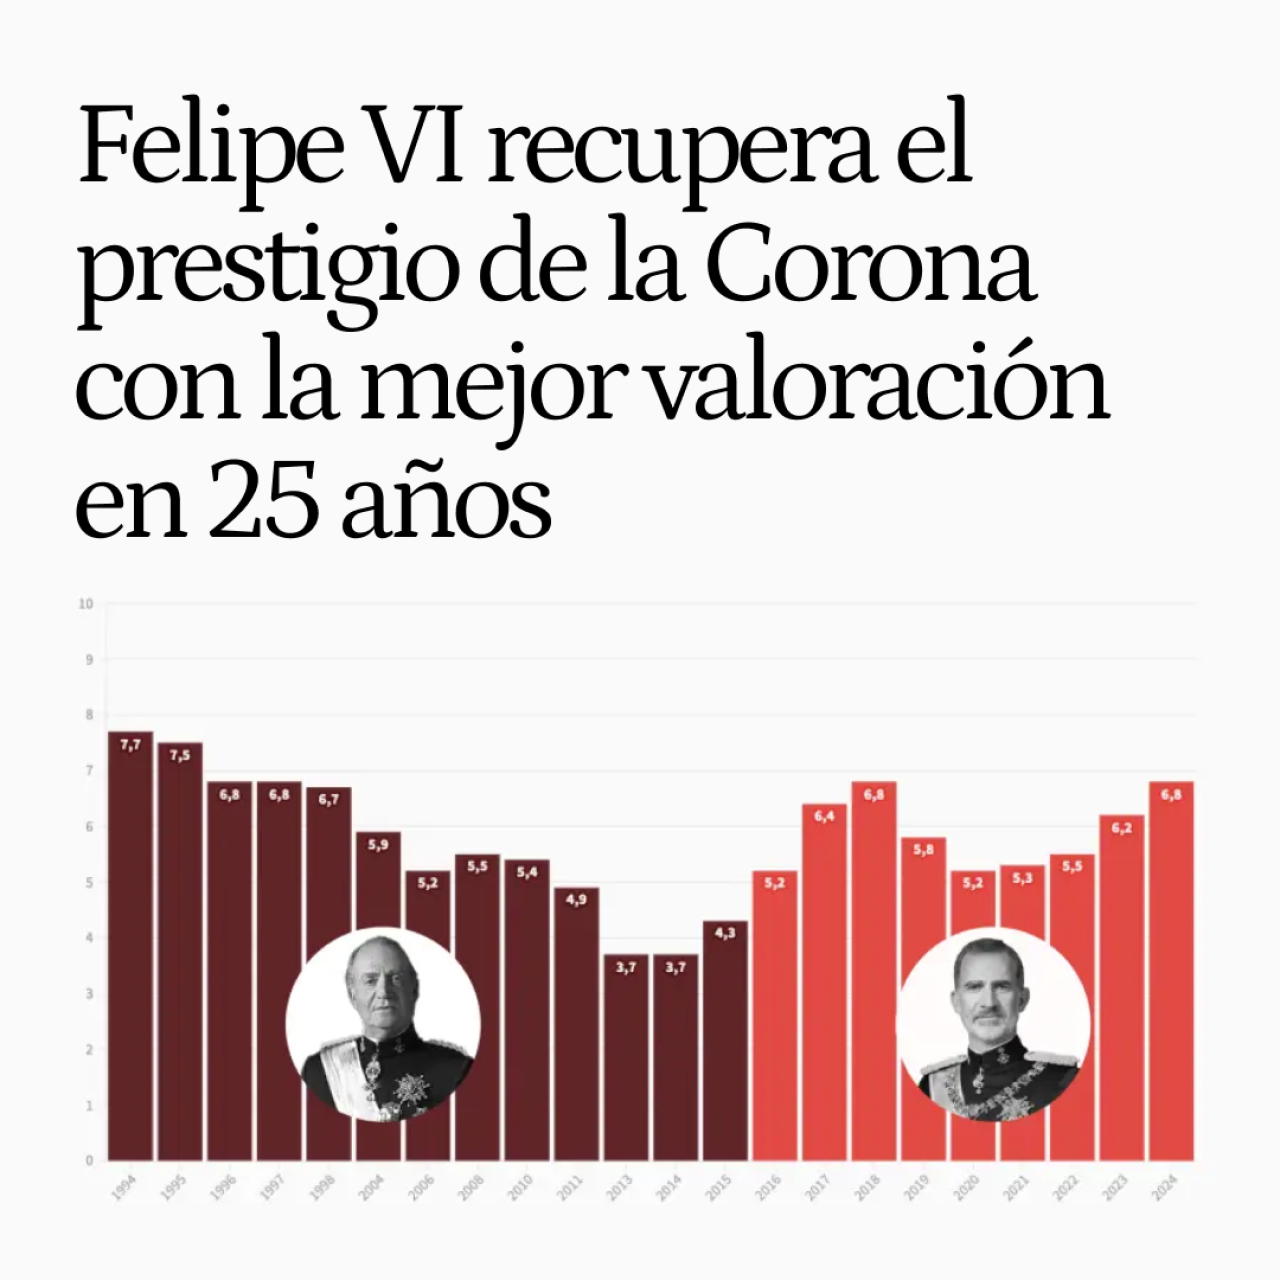 Felipe VI recupera el prestigio de la Monarquía con la valoración más alta en un cuarto de siglo